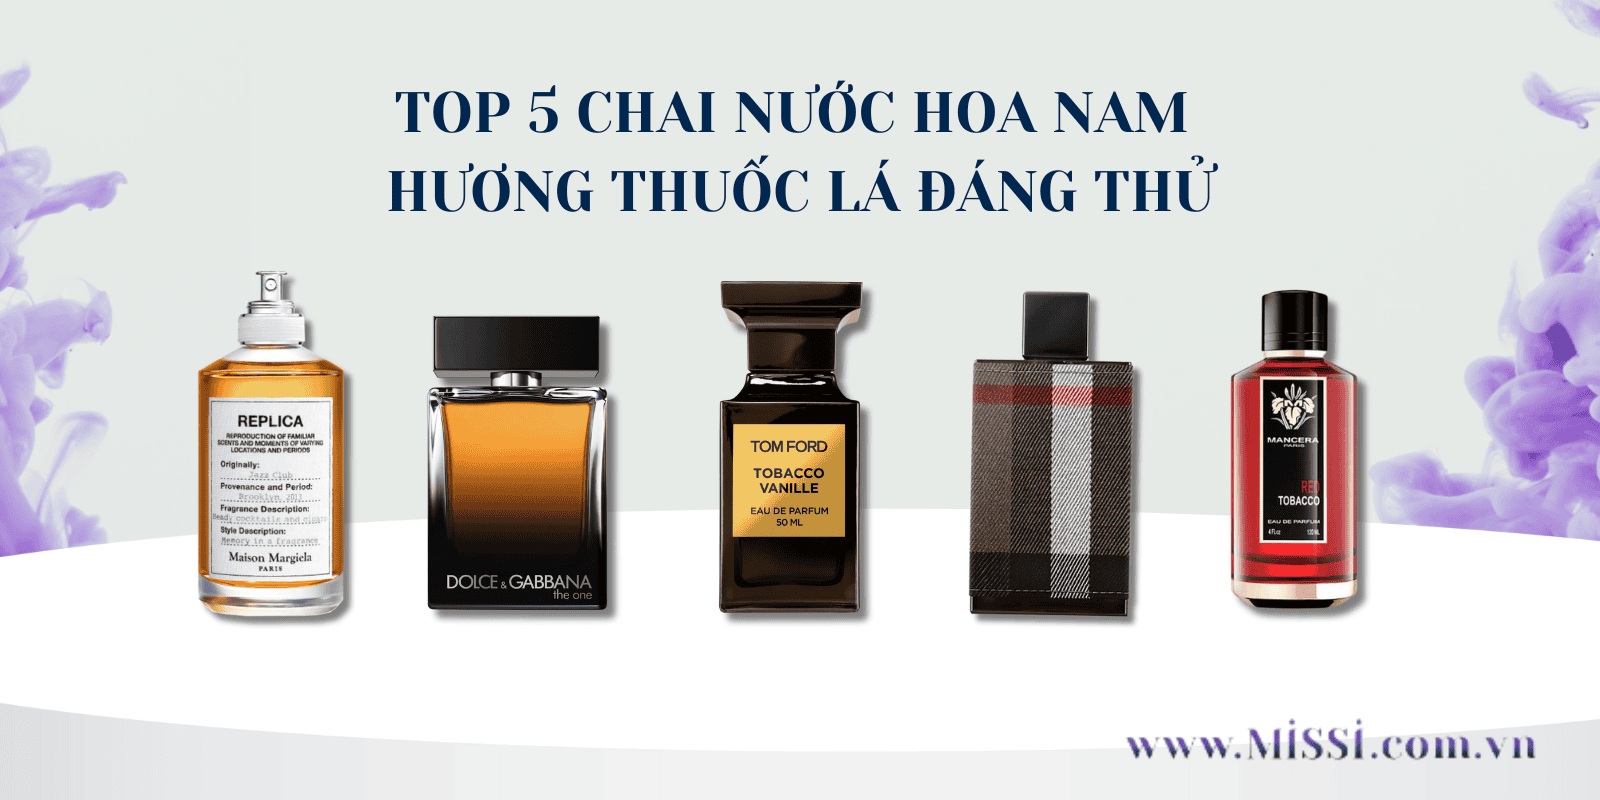 anh dai dien TOP 5 chai nuoc hoa nam huong thuoc la dang thu